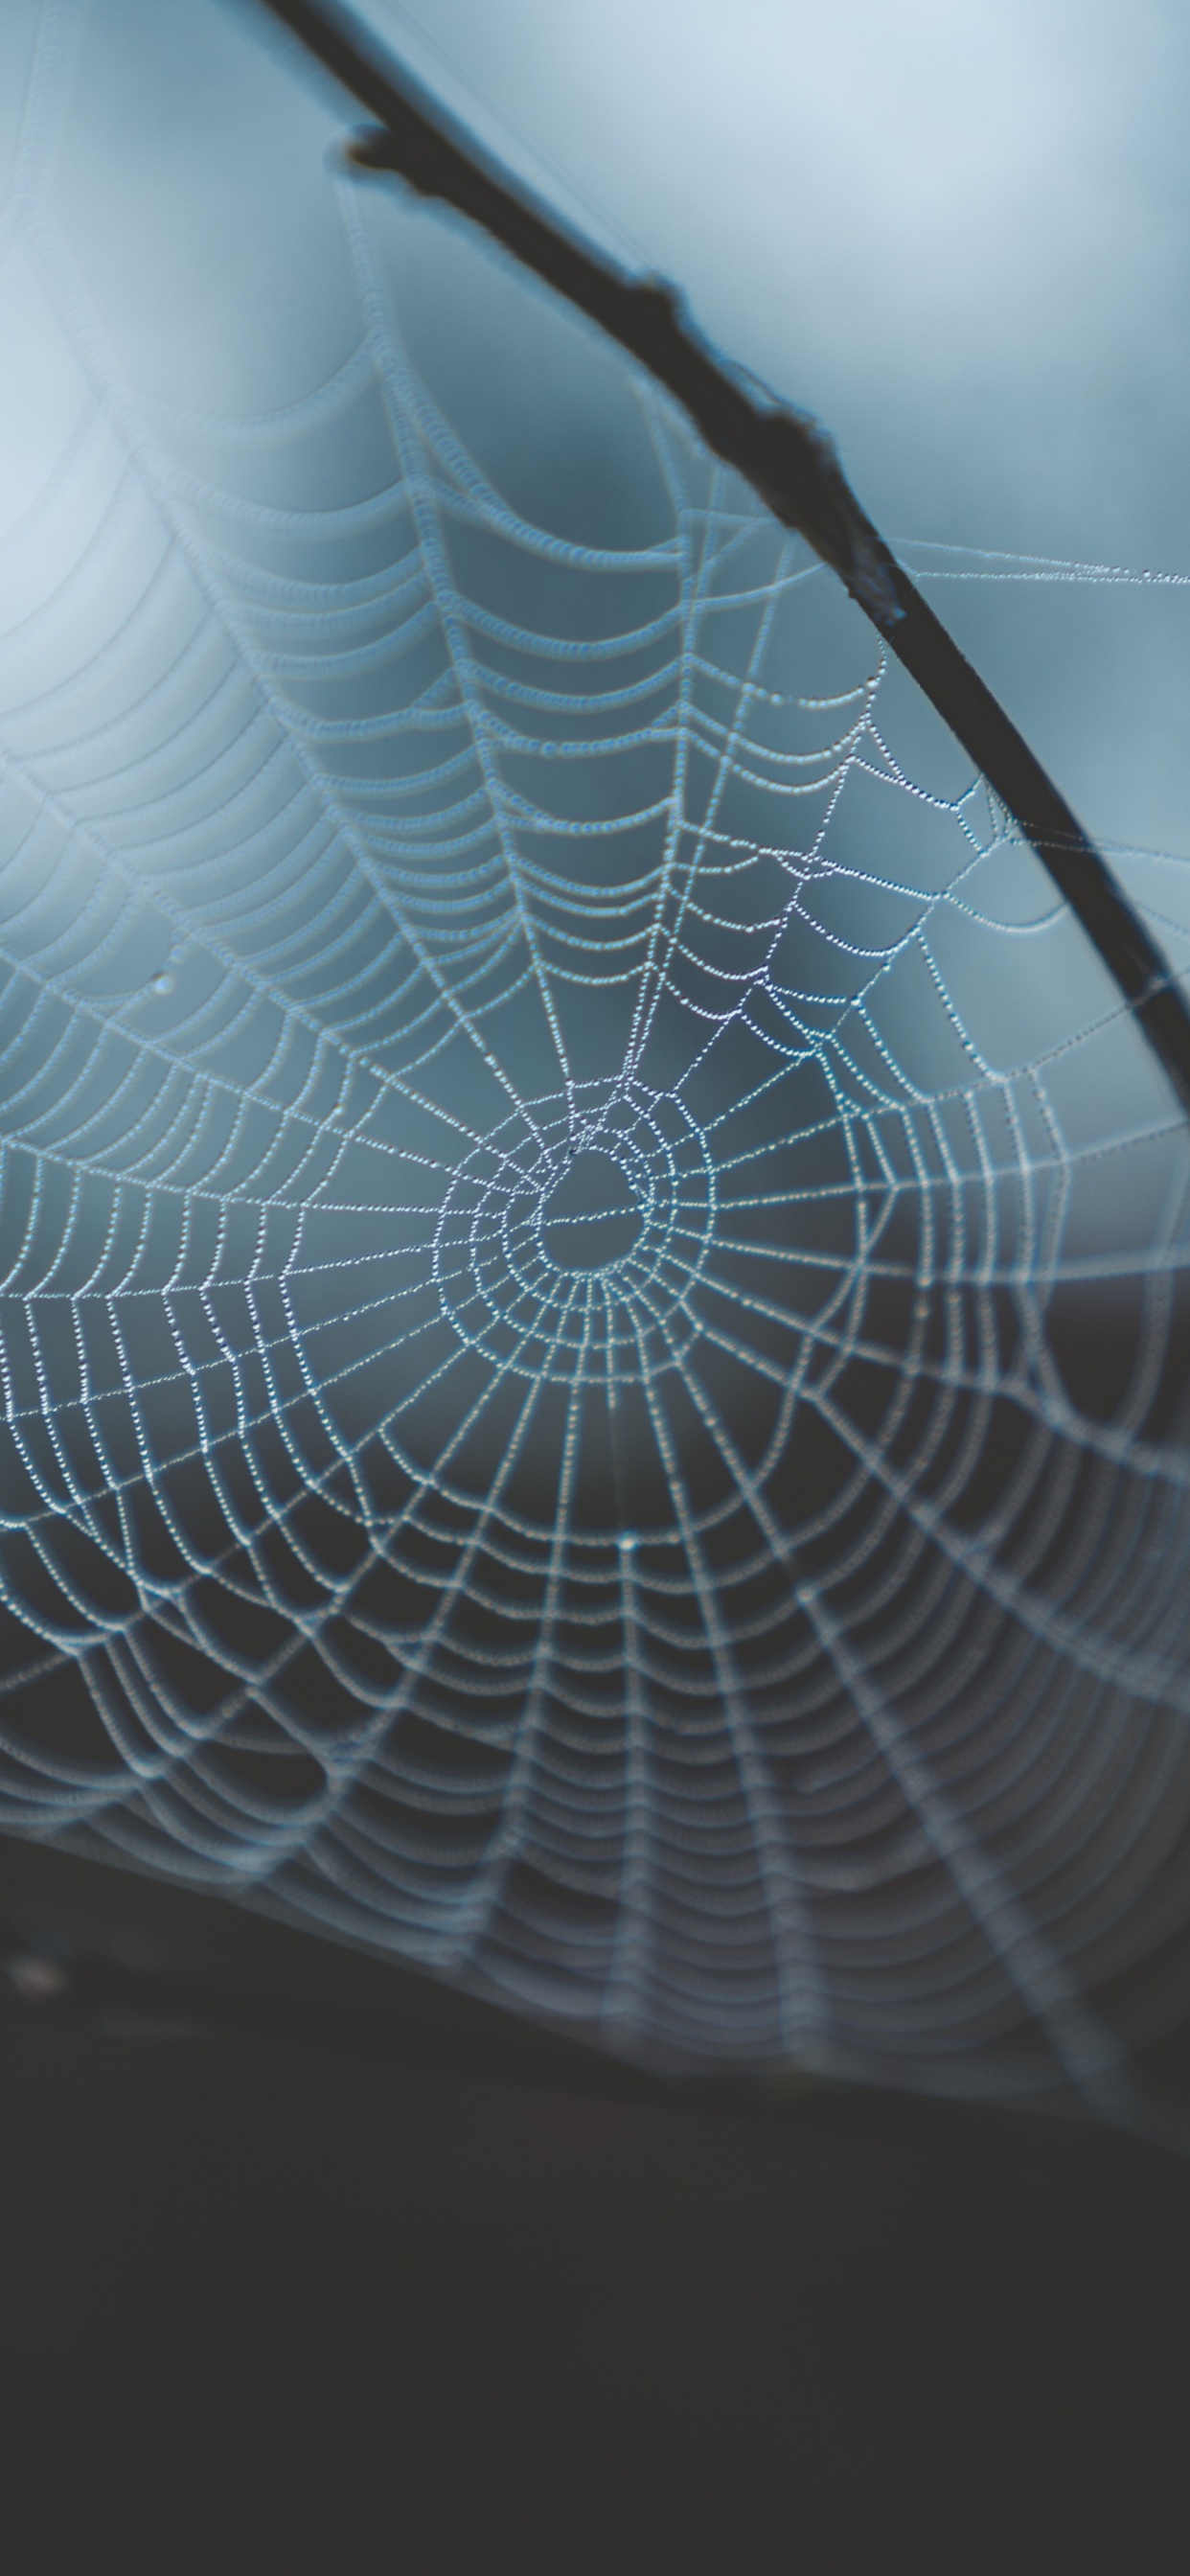 蜘蛛网, 早上, 光, 透明材料, 天空 壁纸 1242x2688 允许